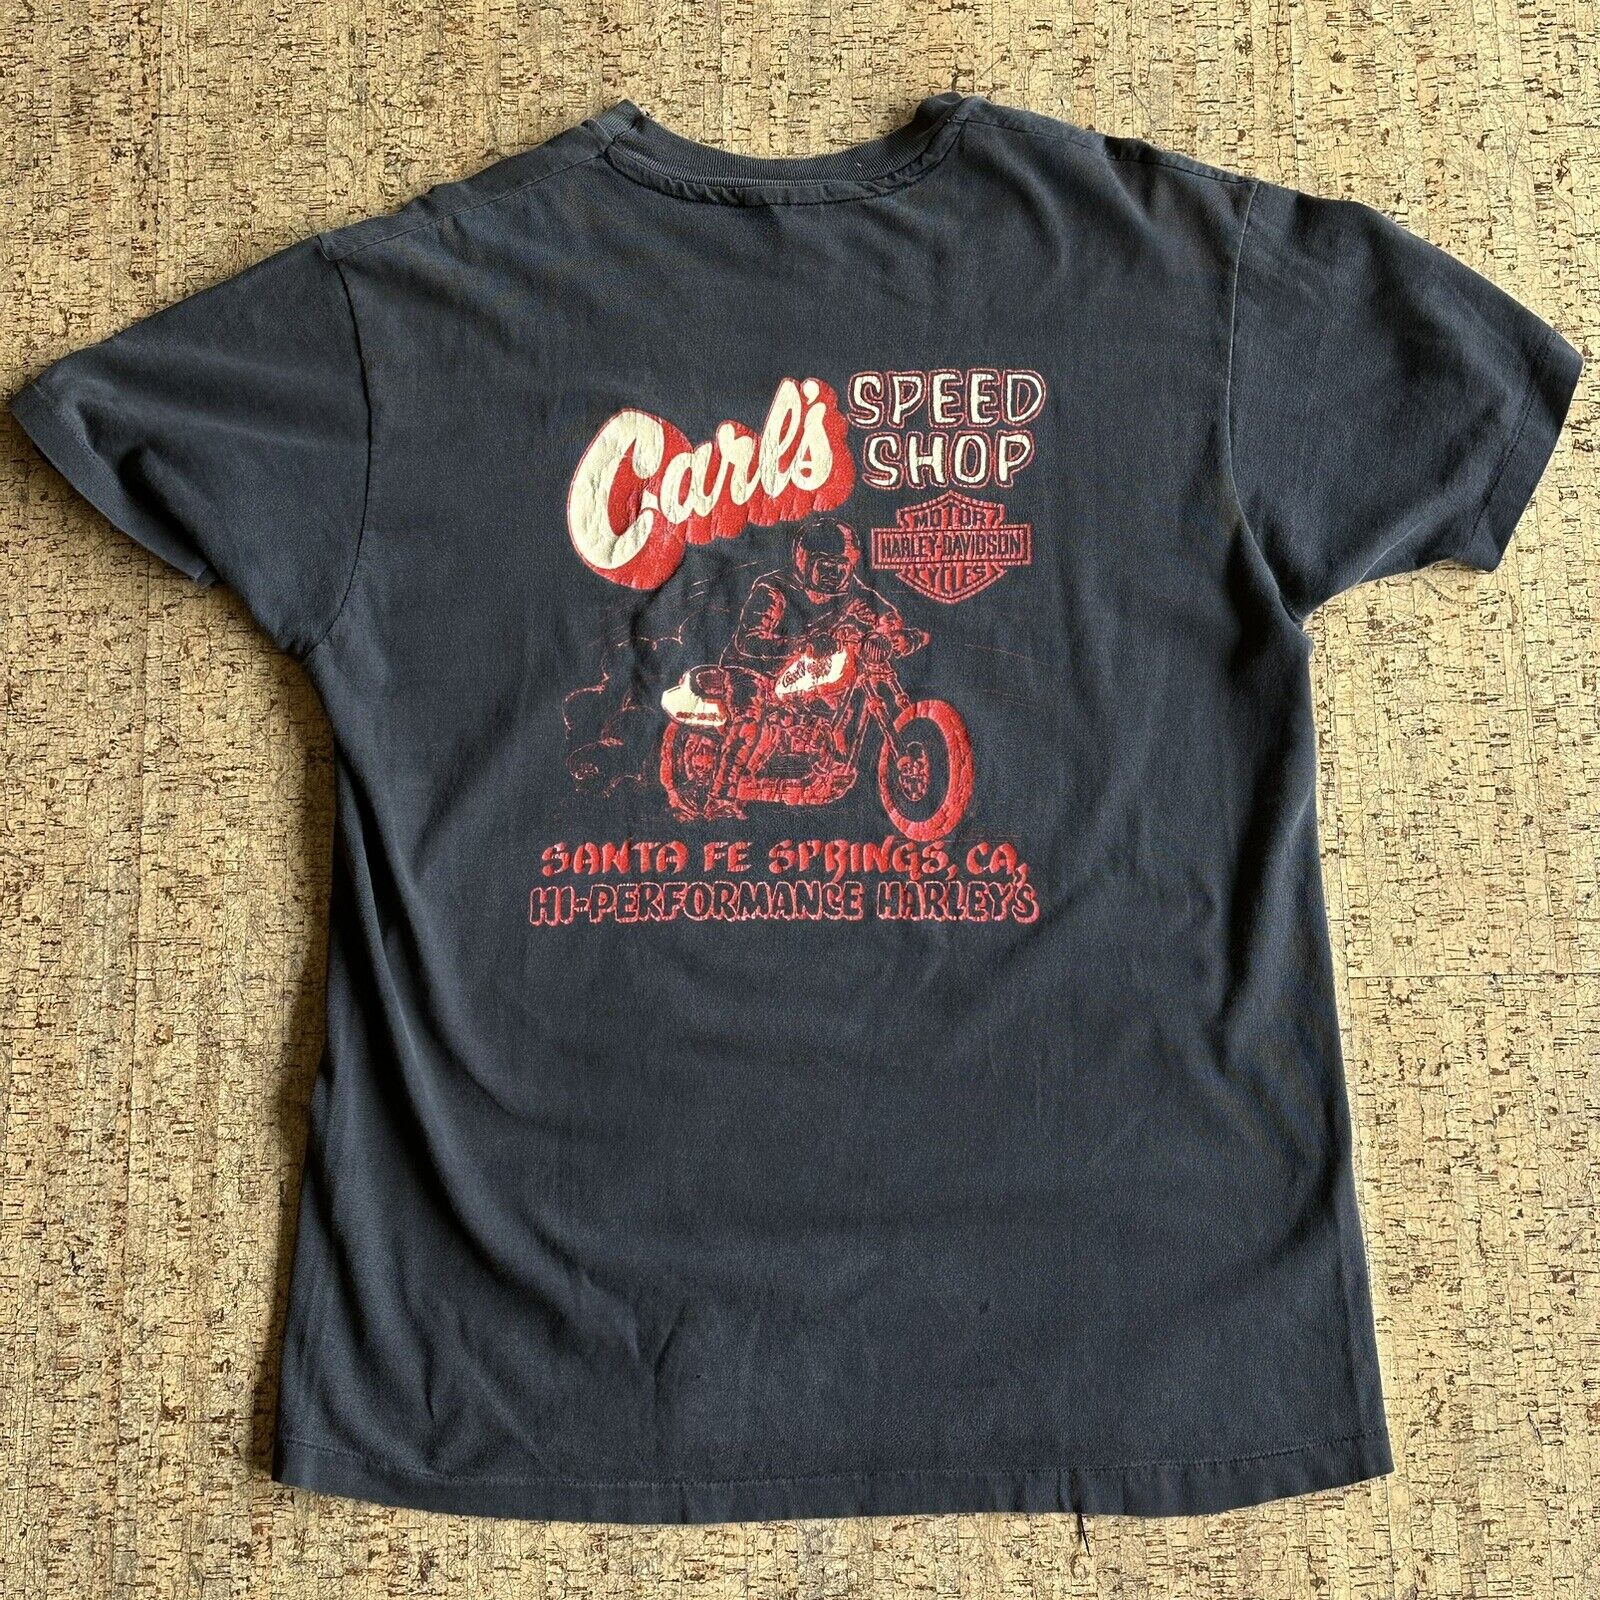 Vintage Harley Davidson 80s Carls Speed Shop T Shirt Beefy-T 2Side Large Single